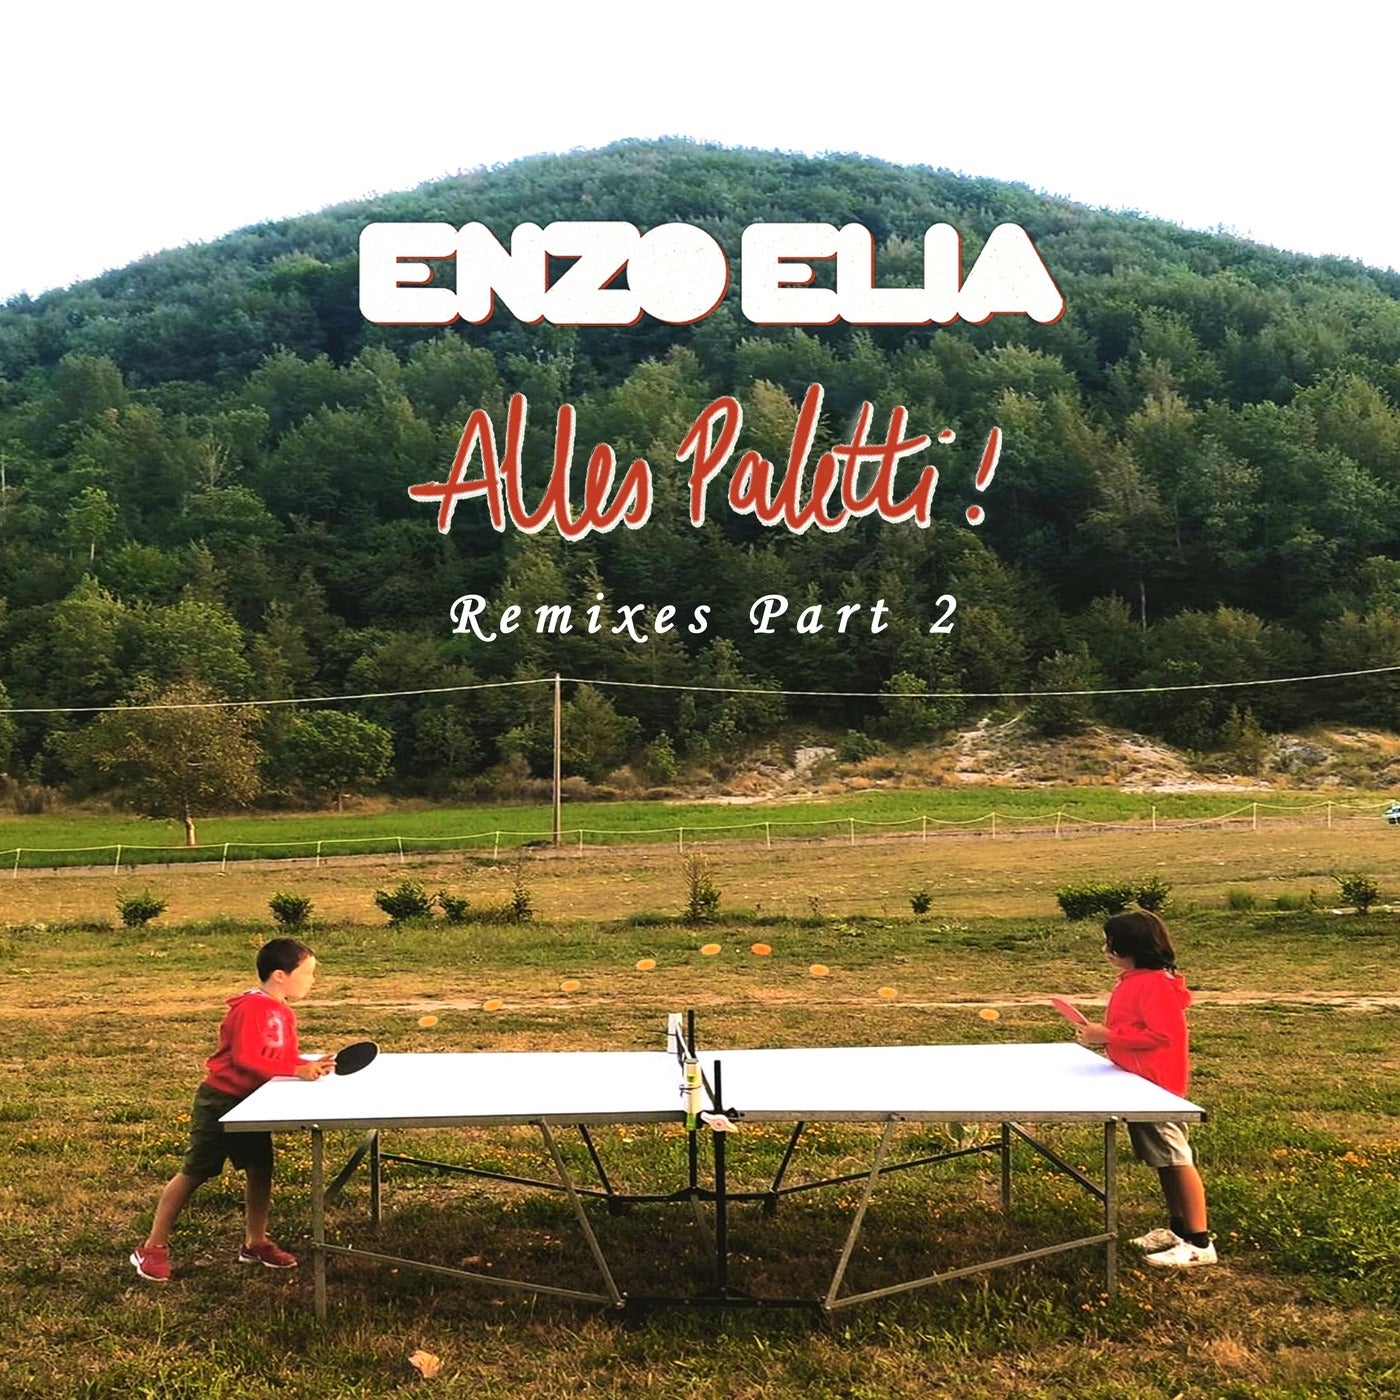 Alles Paletti Remixes, Pt. 2